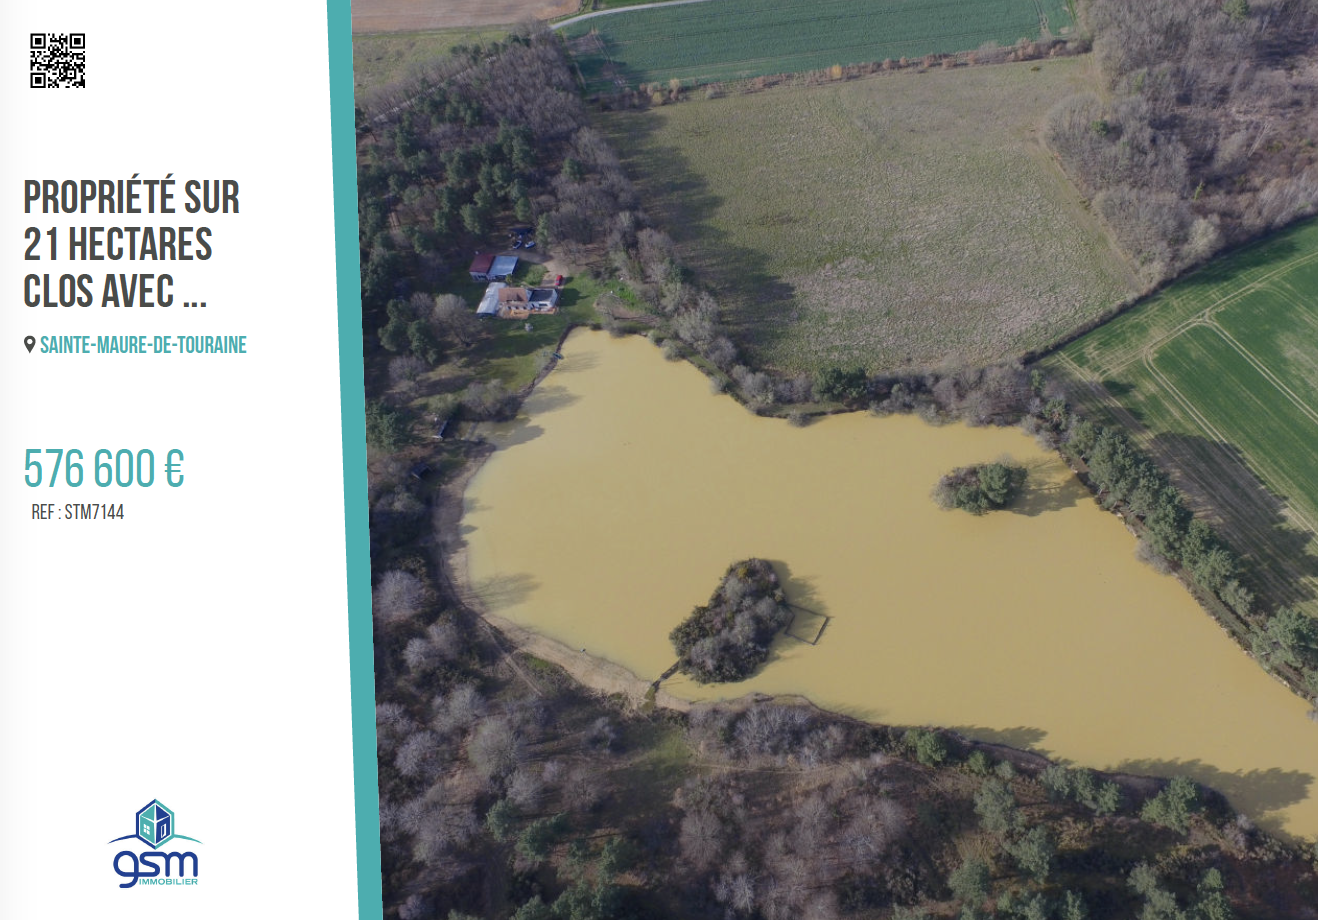 Propriété sur 21 hectares clos avec étang